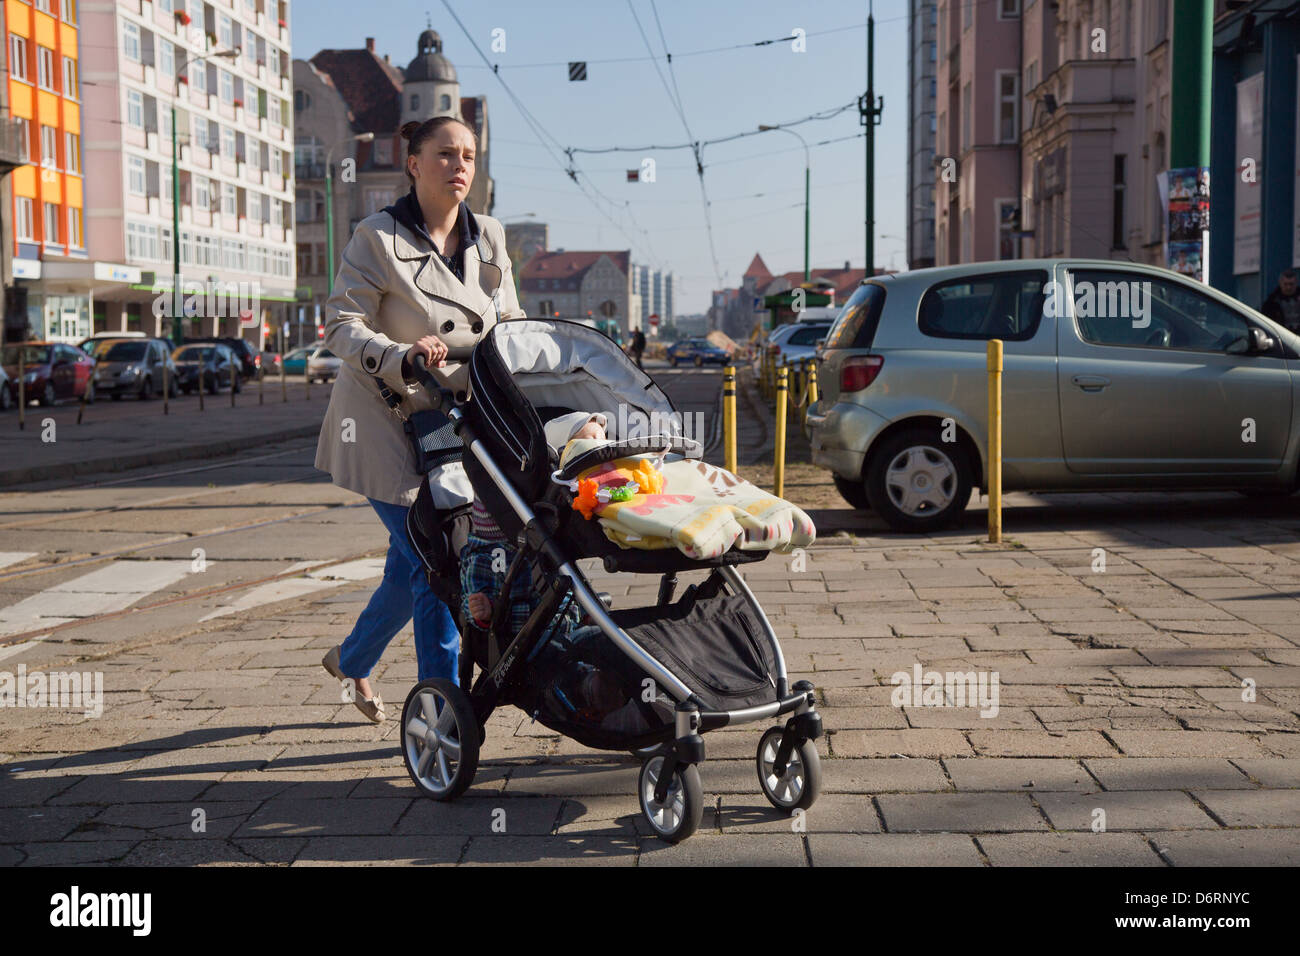 Posen, Polen, Mutter mit zwei Kindern in einem Doppeldecker-Kinderwagen  Stockfotografie - Alamy